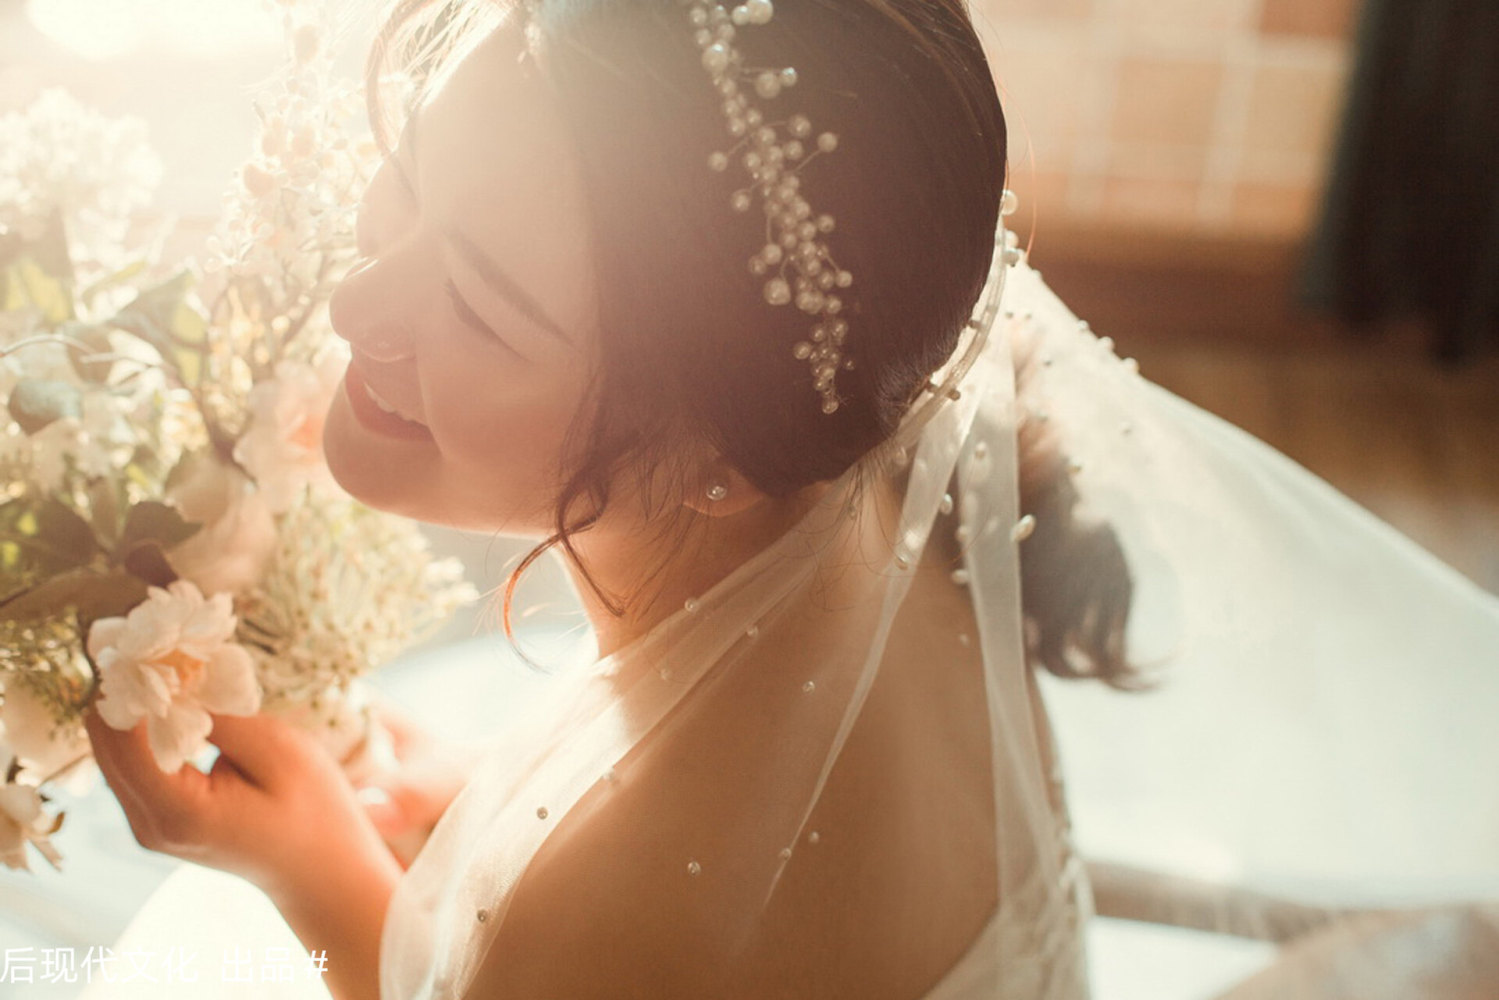 福州婚纱摄影 (6)